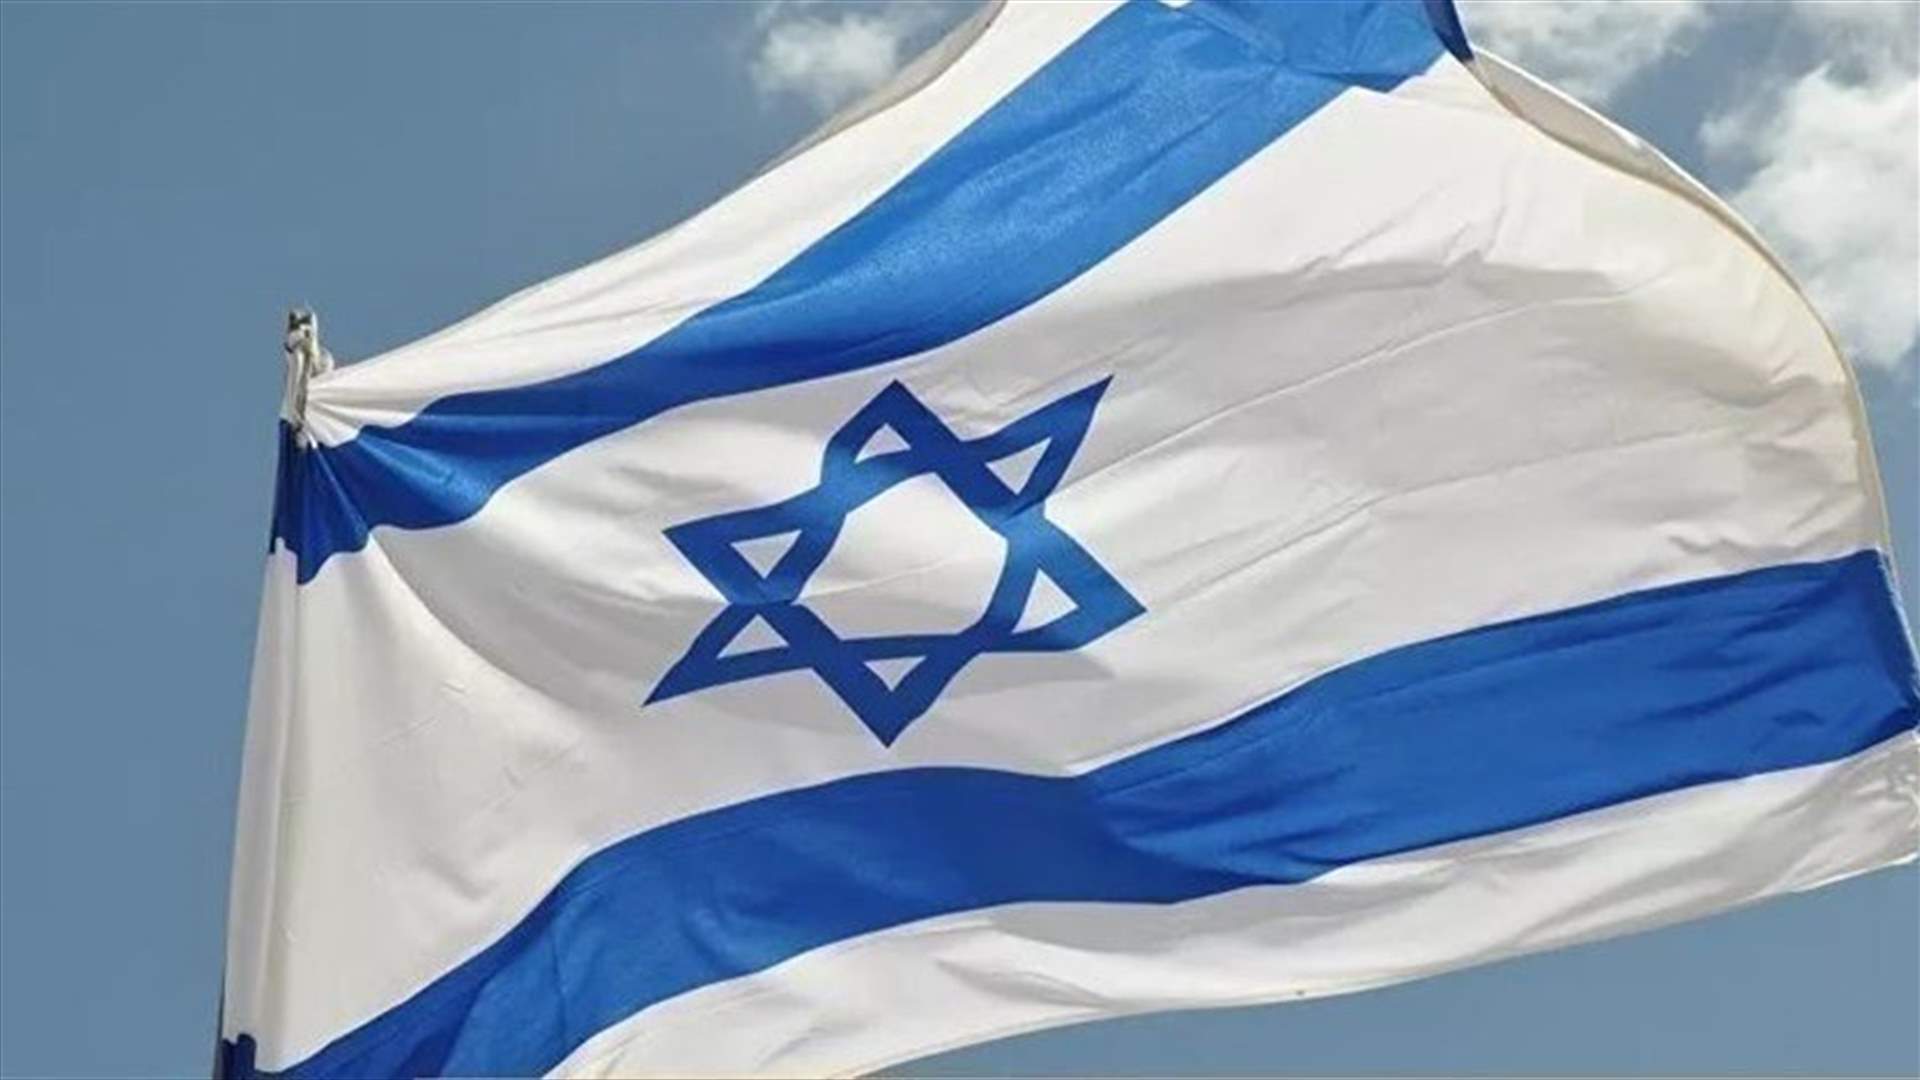 إسرائيل تدعو القوى العالمية الى وقف المحادثات النووية مع إيران فورا